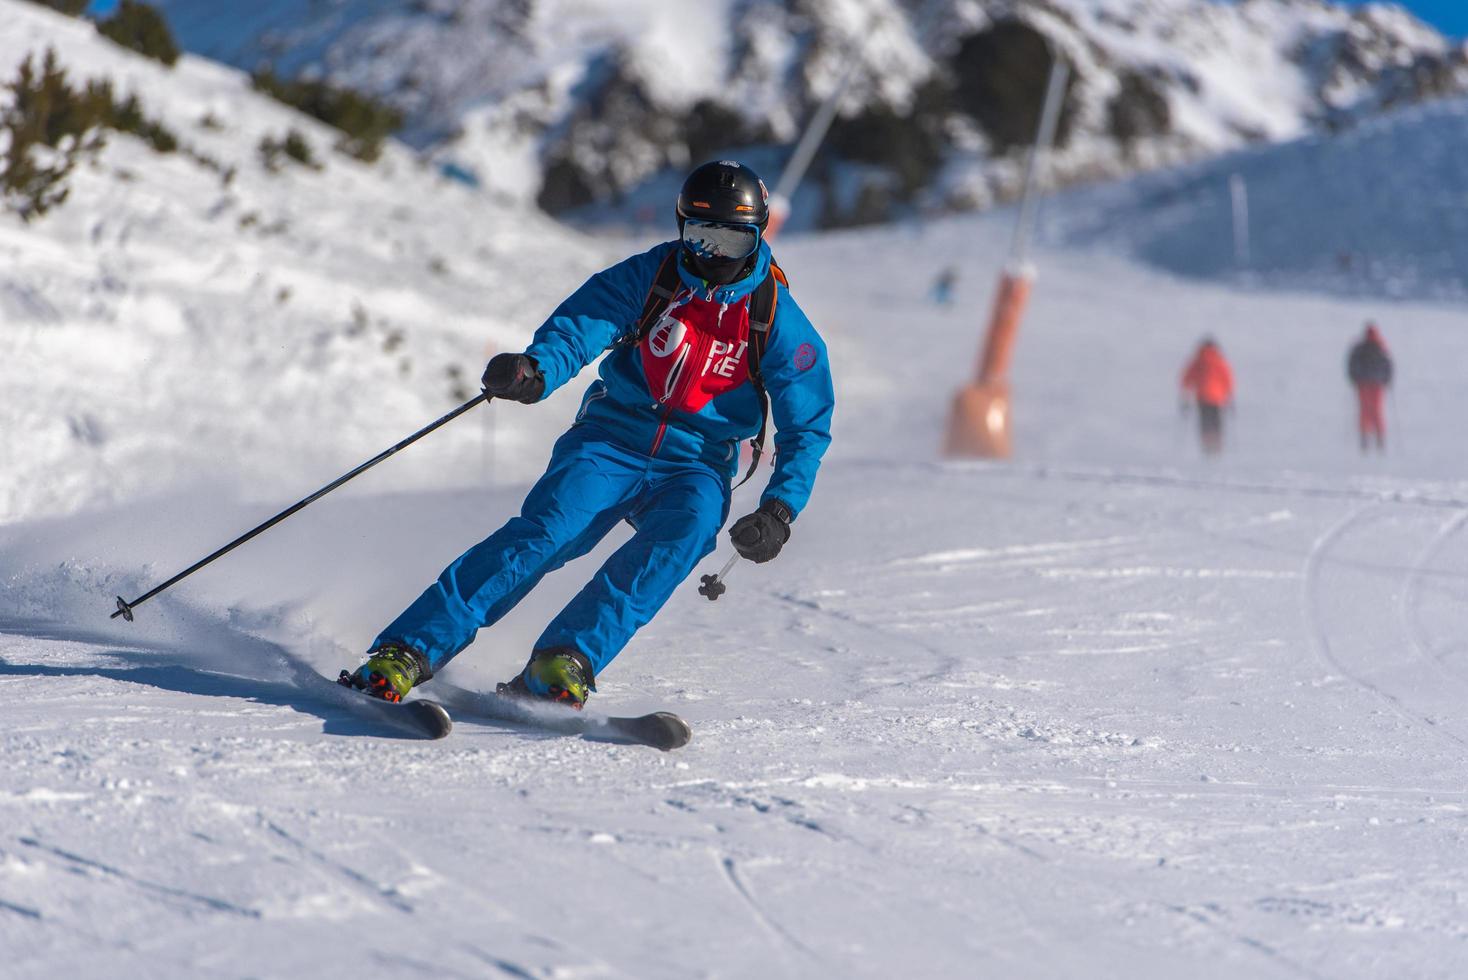 grandvalira, andorra. 2021 11 de dezembro jovem esquiando nos pirineus na estação de esqui grandvalira em andorra em covid19 time foto